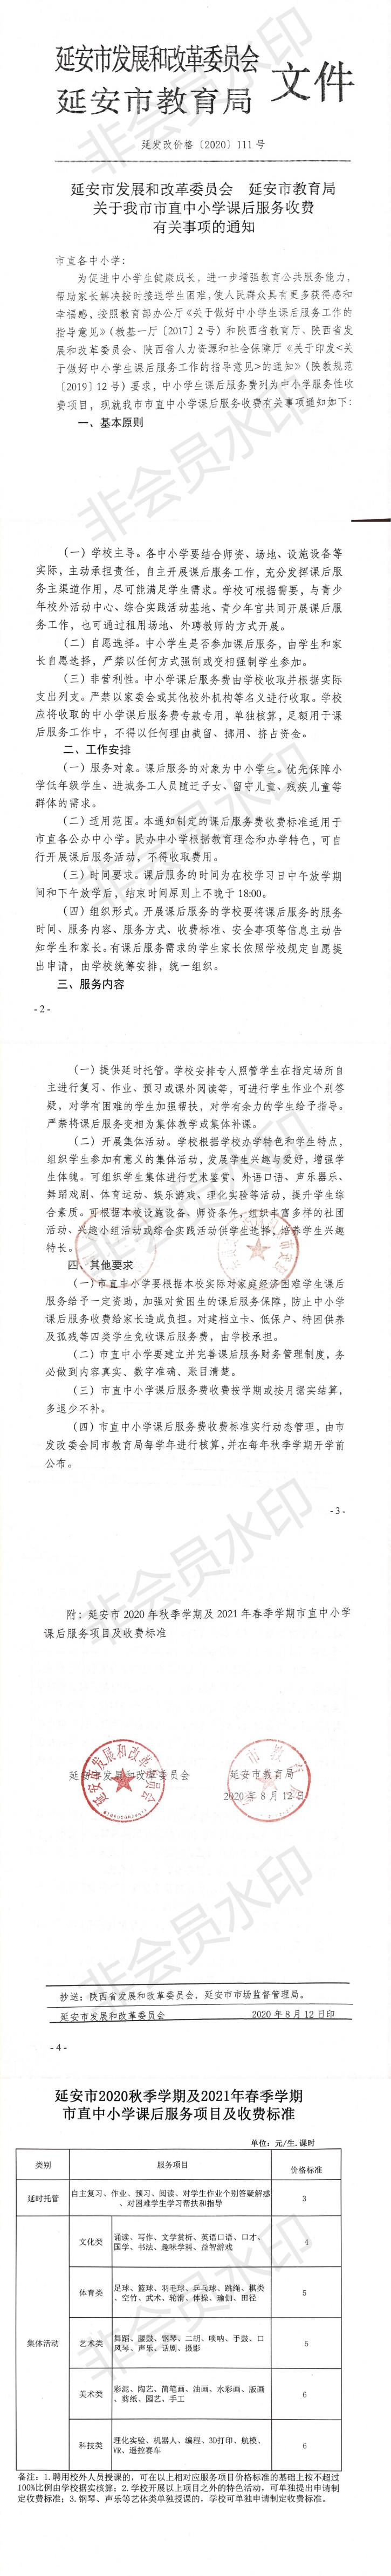 學校(xiào)通知公告欄，2020.8.13，總務(wù)處發布_0.jpg